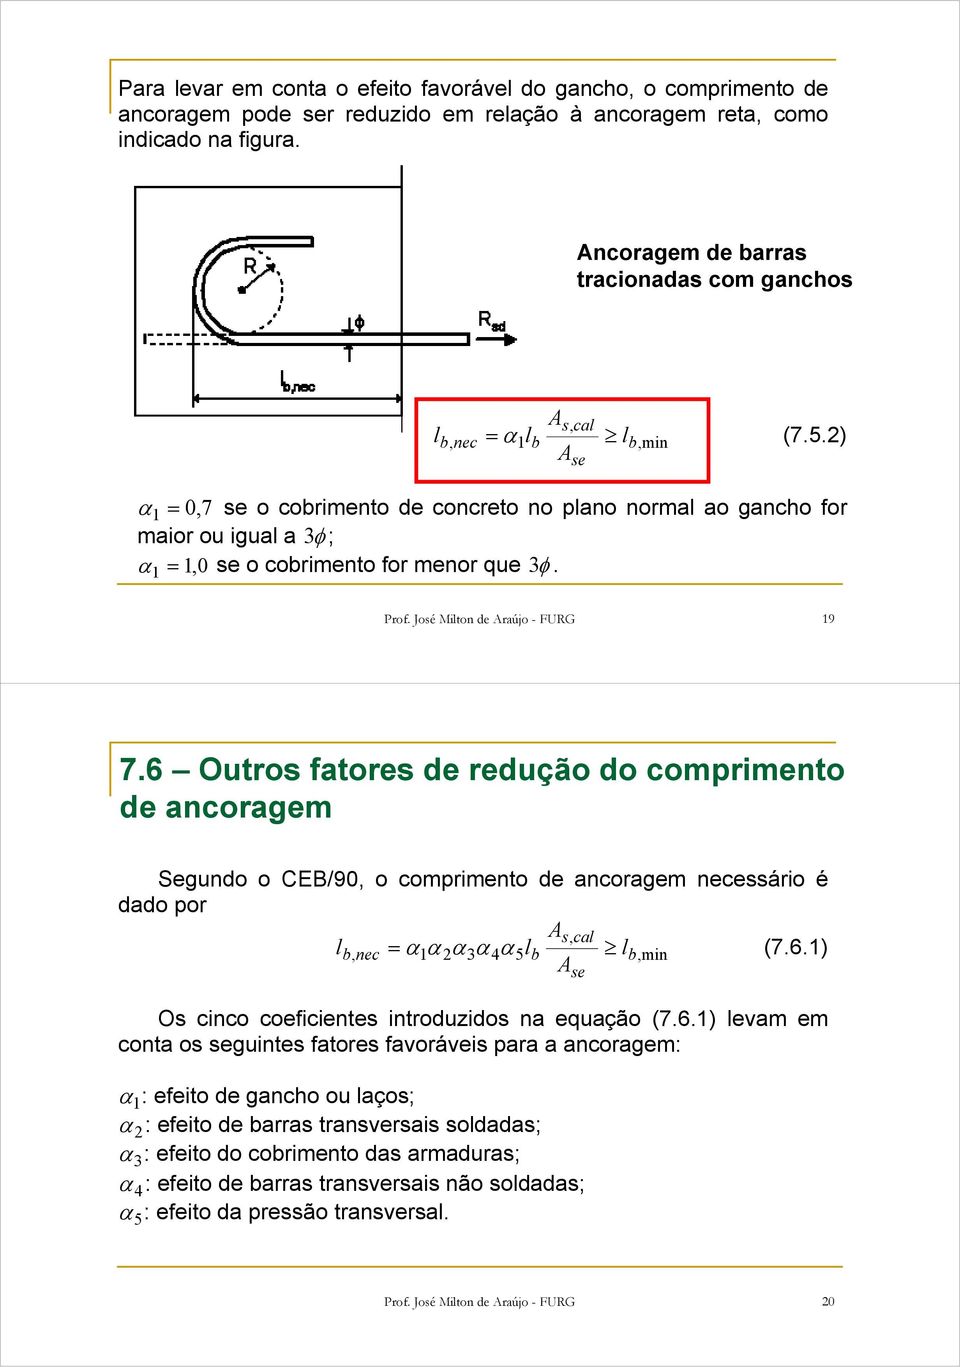 José Miton de Araújo - FURG 19 7.6 Outros fatores de redução do comprimento de ancoragem Segundo o CEB/90, o comprimento de ancoragem necessário é dado por As, ca b, nec = α 1α 2α3α 4α5b b,min (7.6.1) A Os cinco coeficientes introduzidos na equação (7.